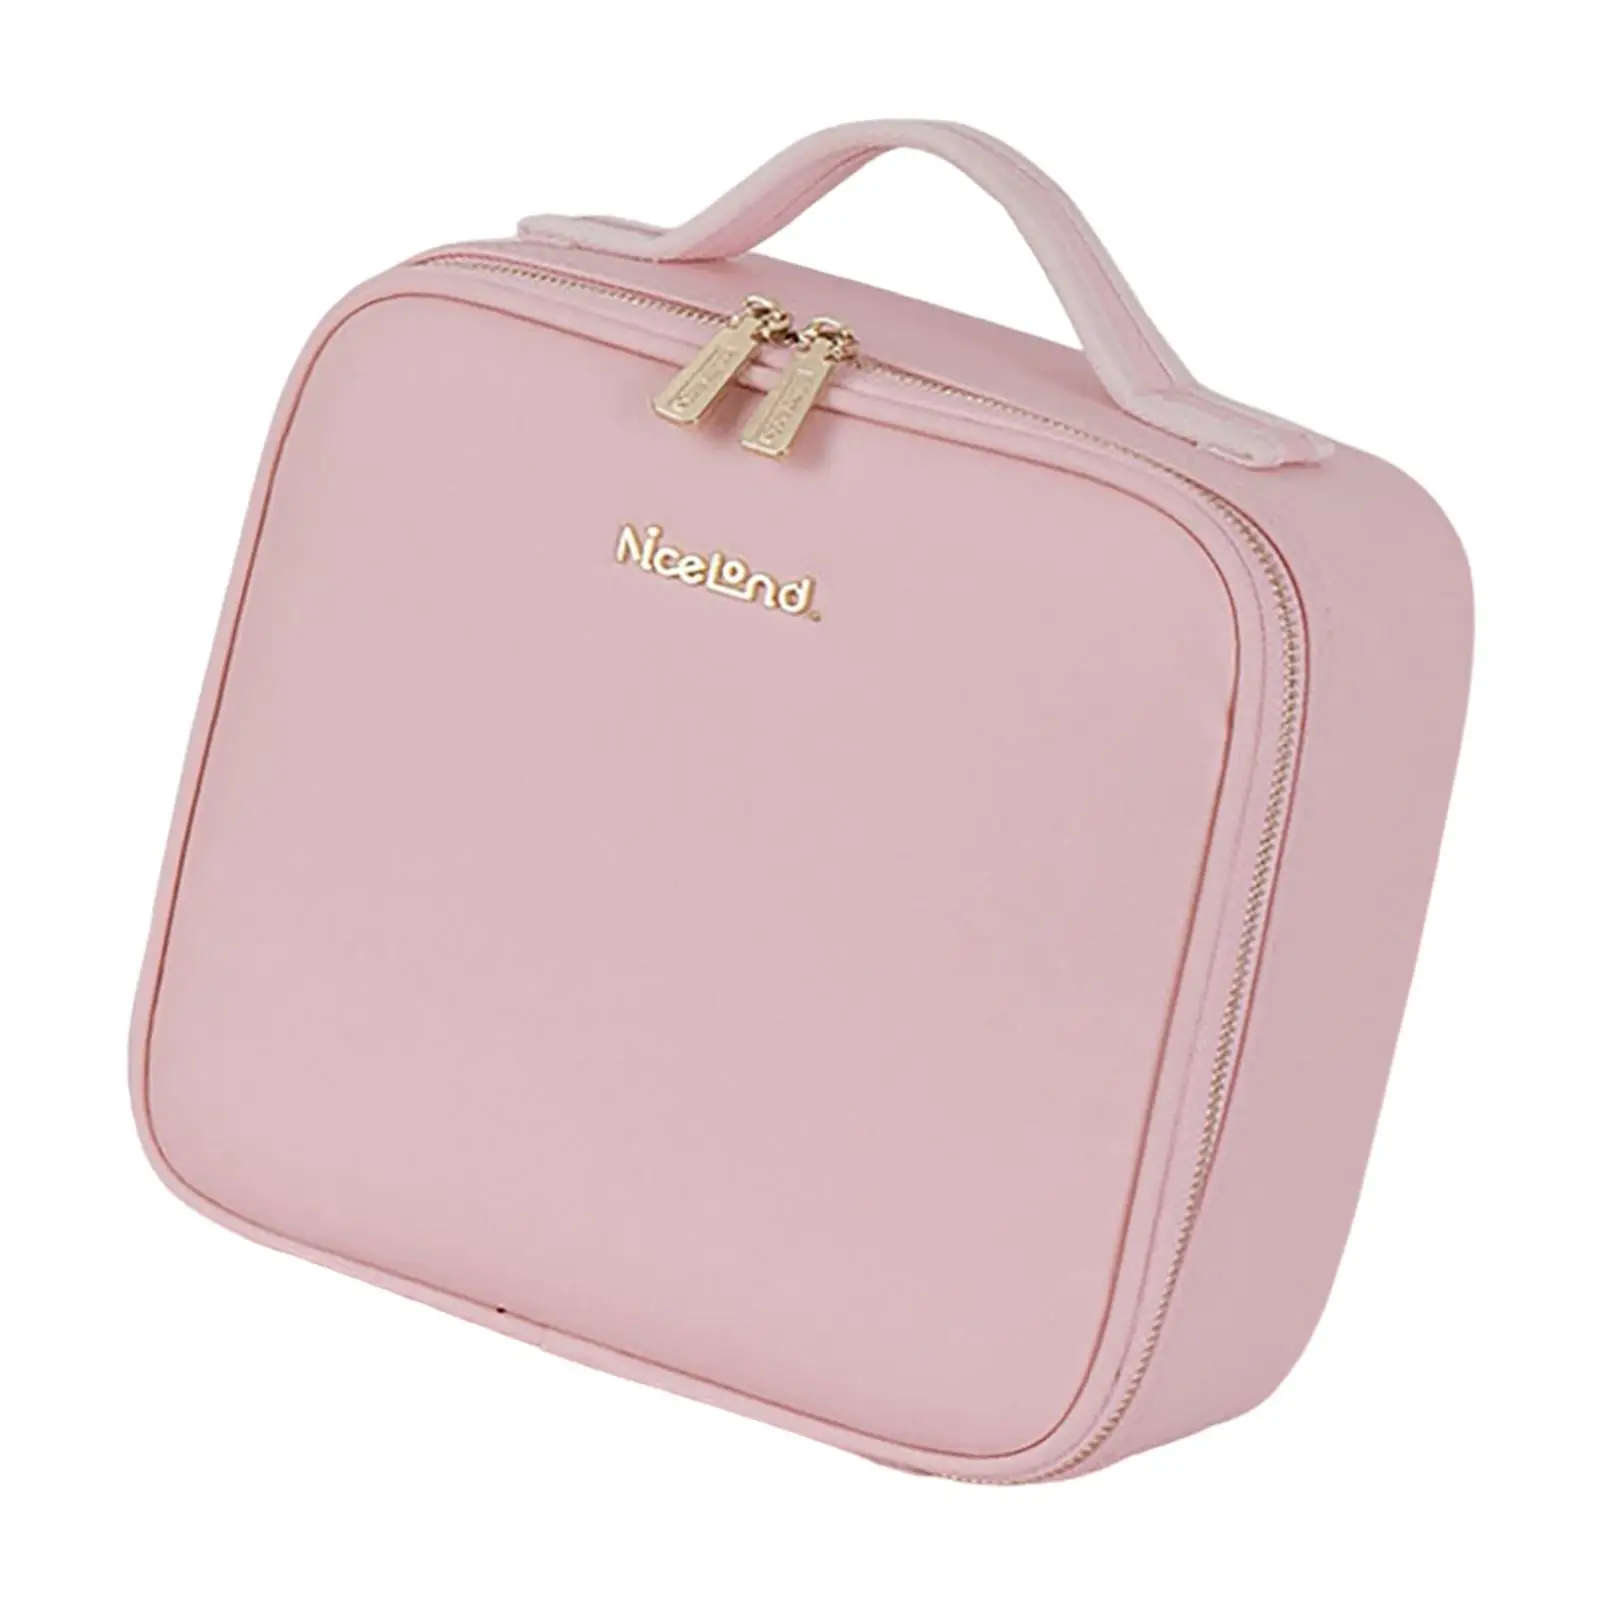 Makeup Case with Adjustable Brightness Storage Bag for Girls Gift